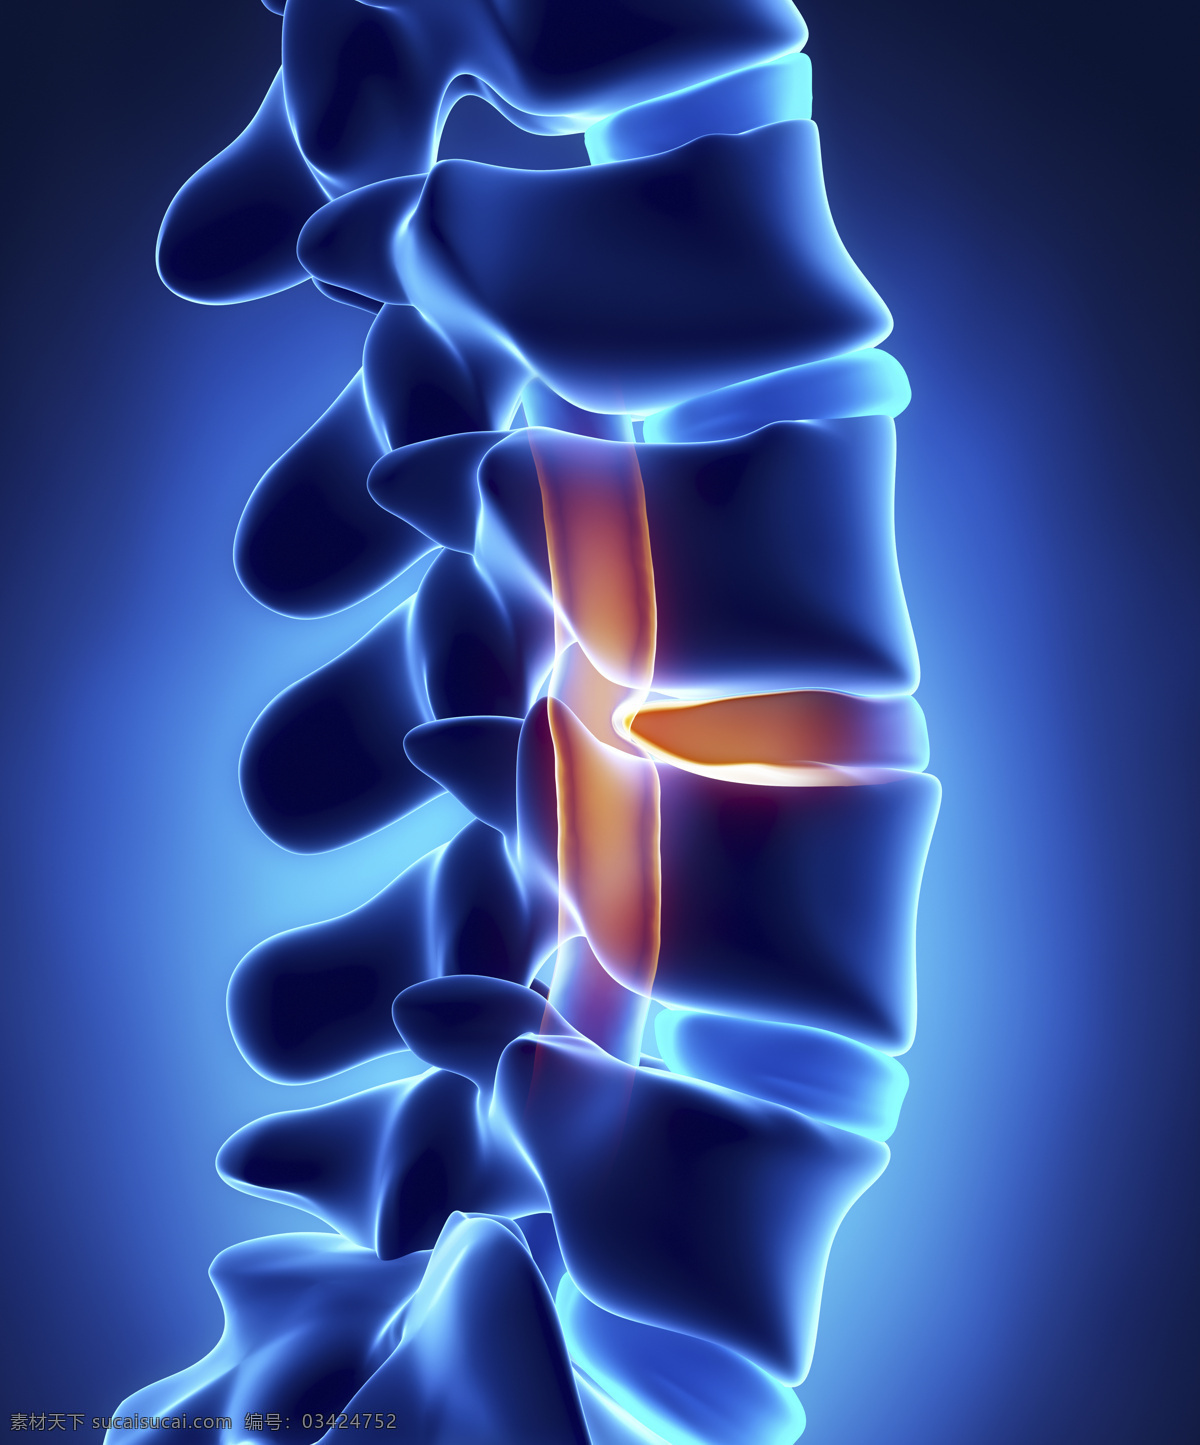 脊椎 脊髓 器官 骨骼 男性人体器官 医疗科学 医学 人体器官图 人物图片